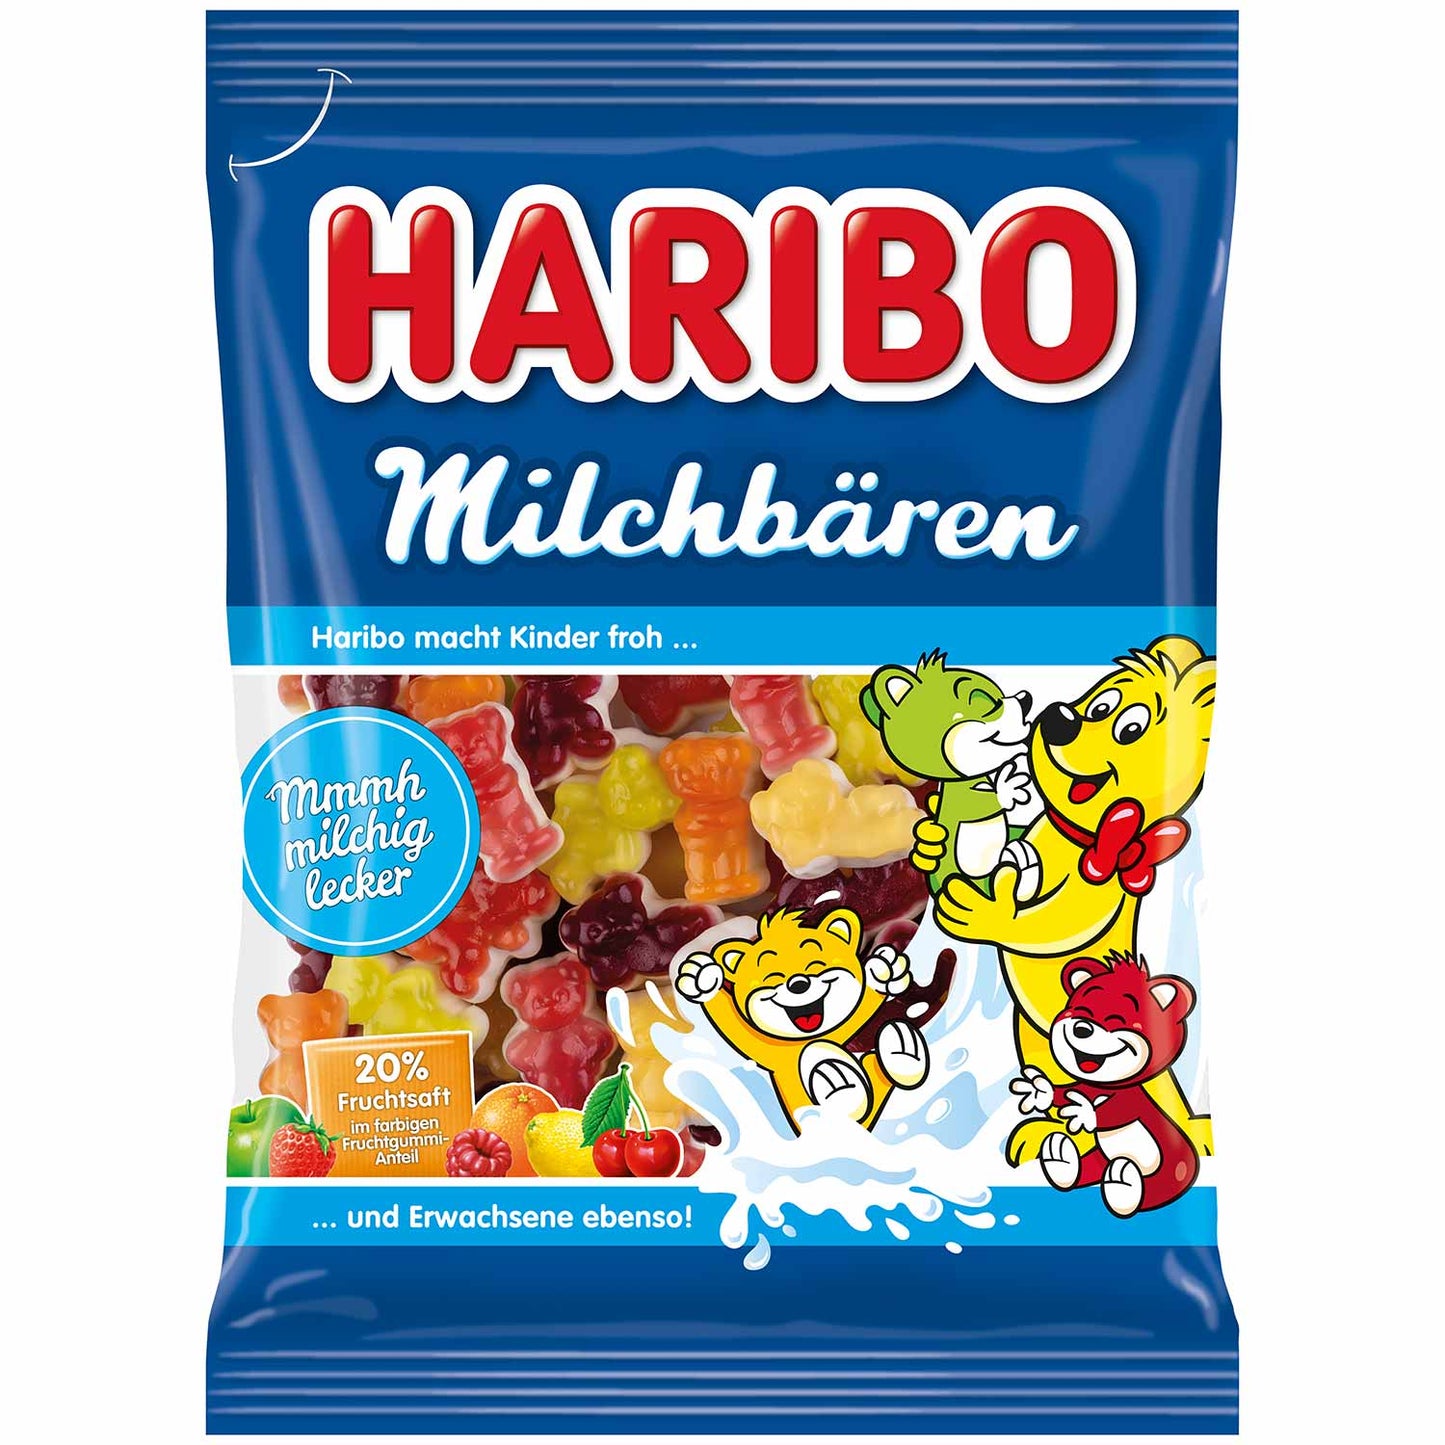 Haribo Milchbären 160g - Candyshop.ch